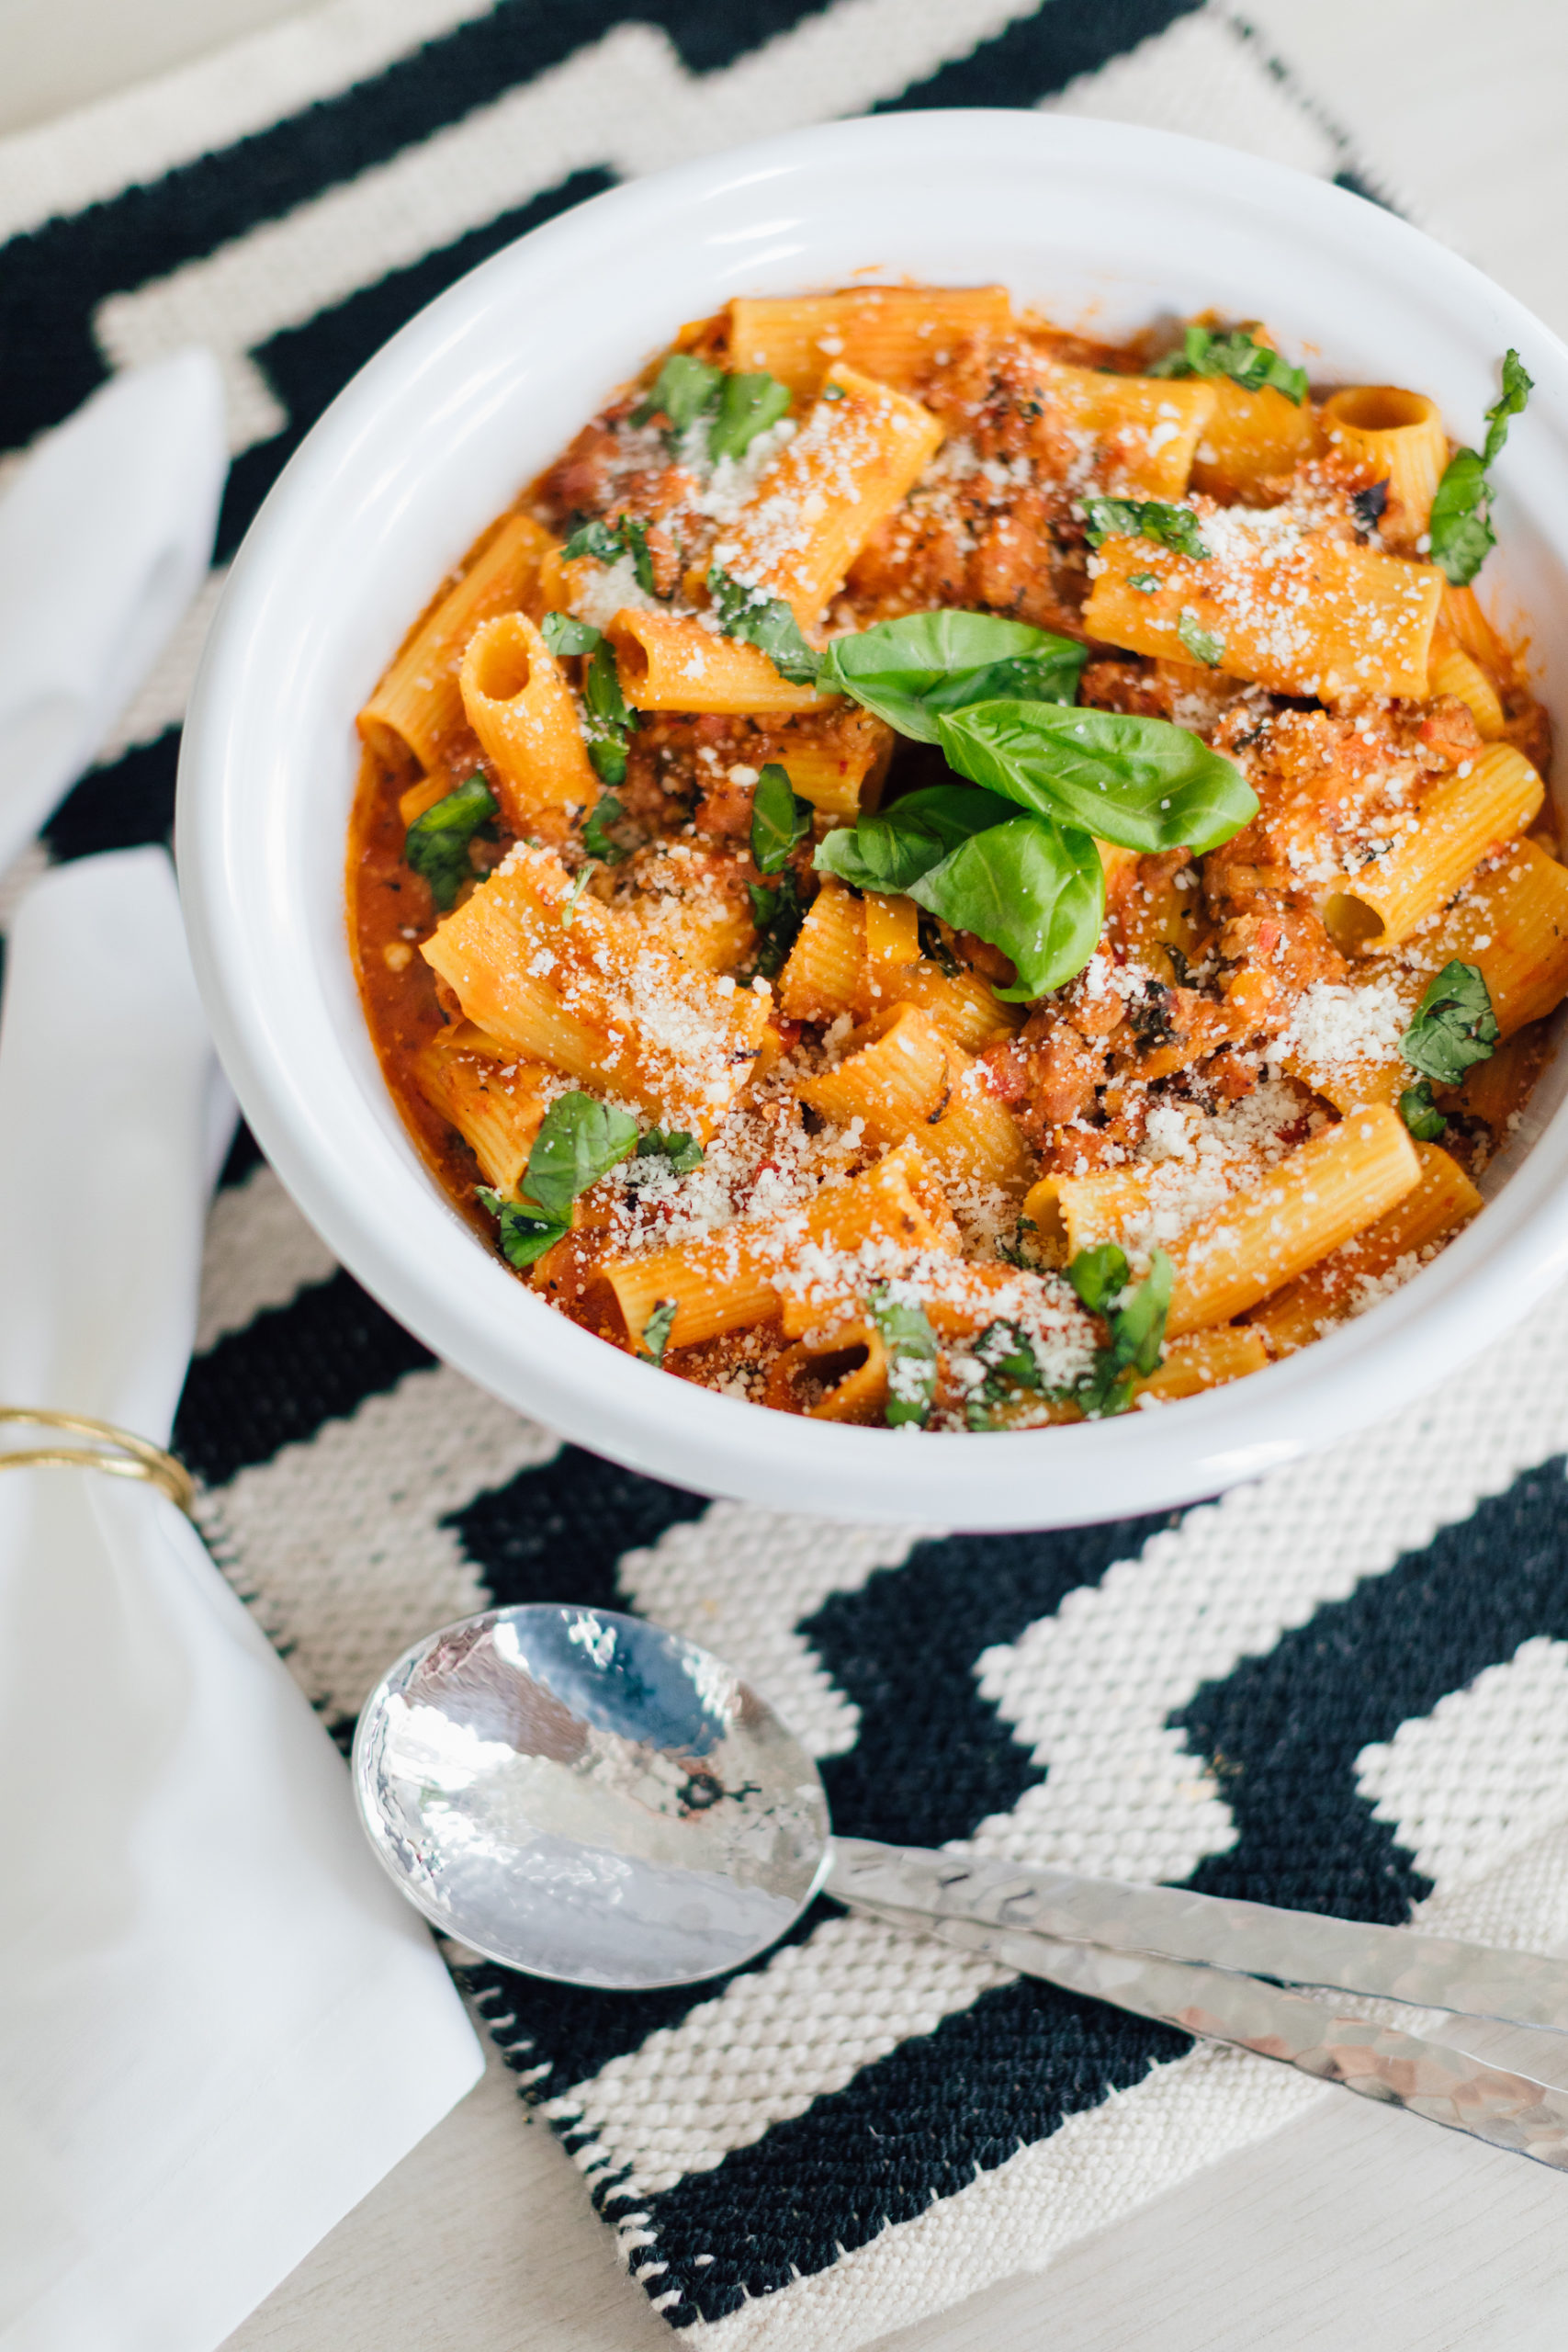 Blogger Eva Amurri shares an easy one-pot creamy sausage and pepper pasta recipe